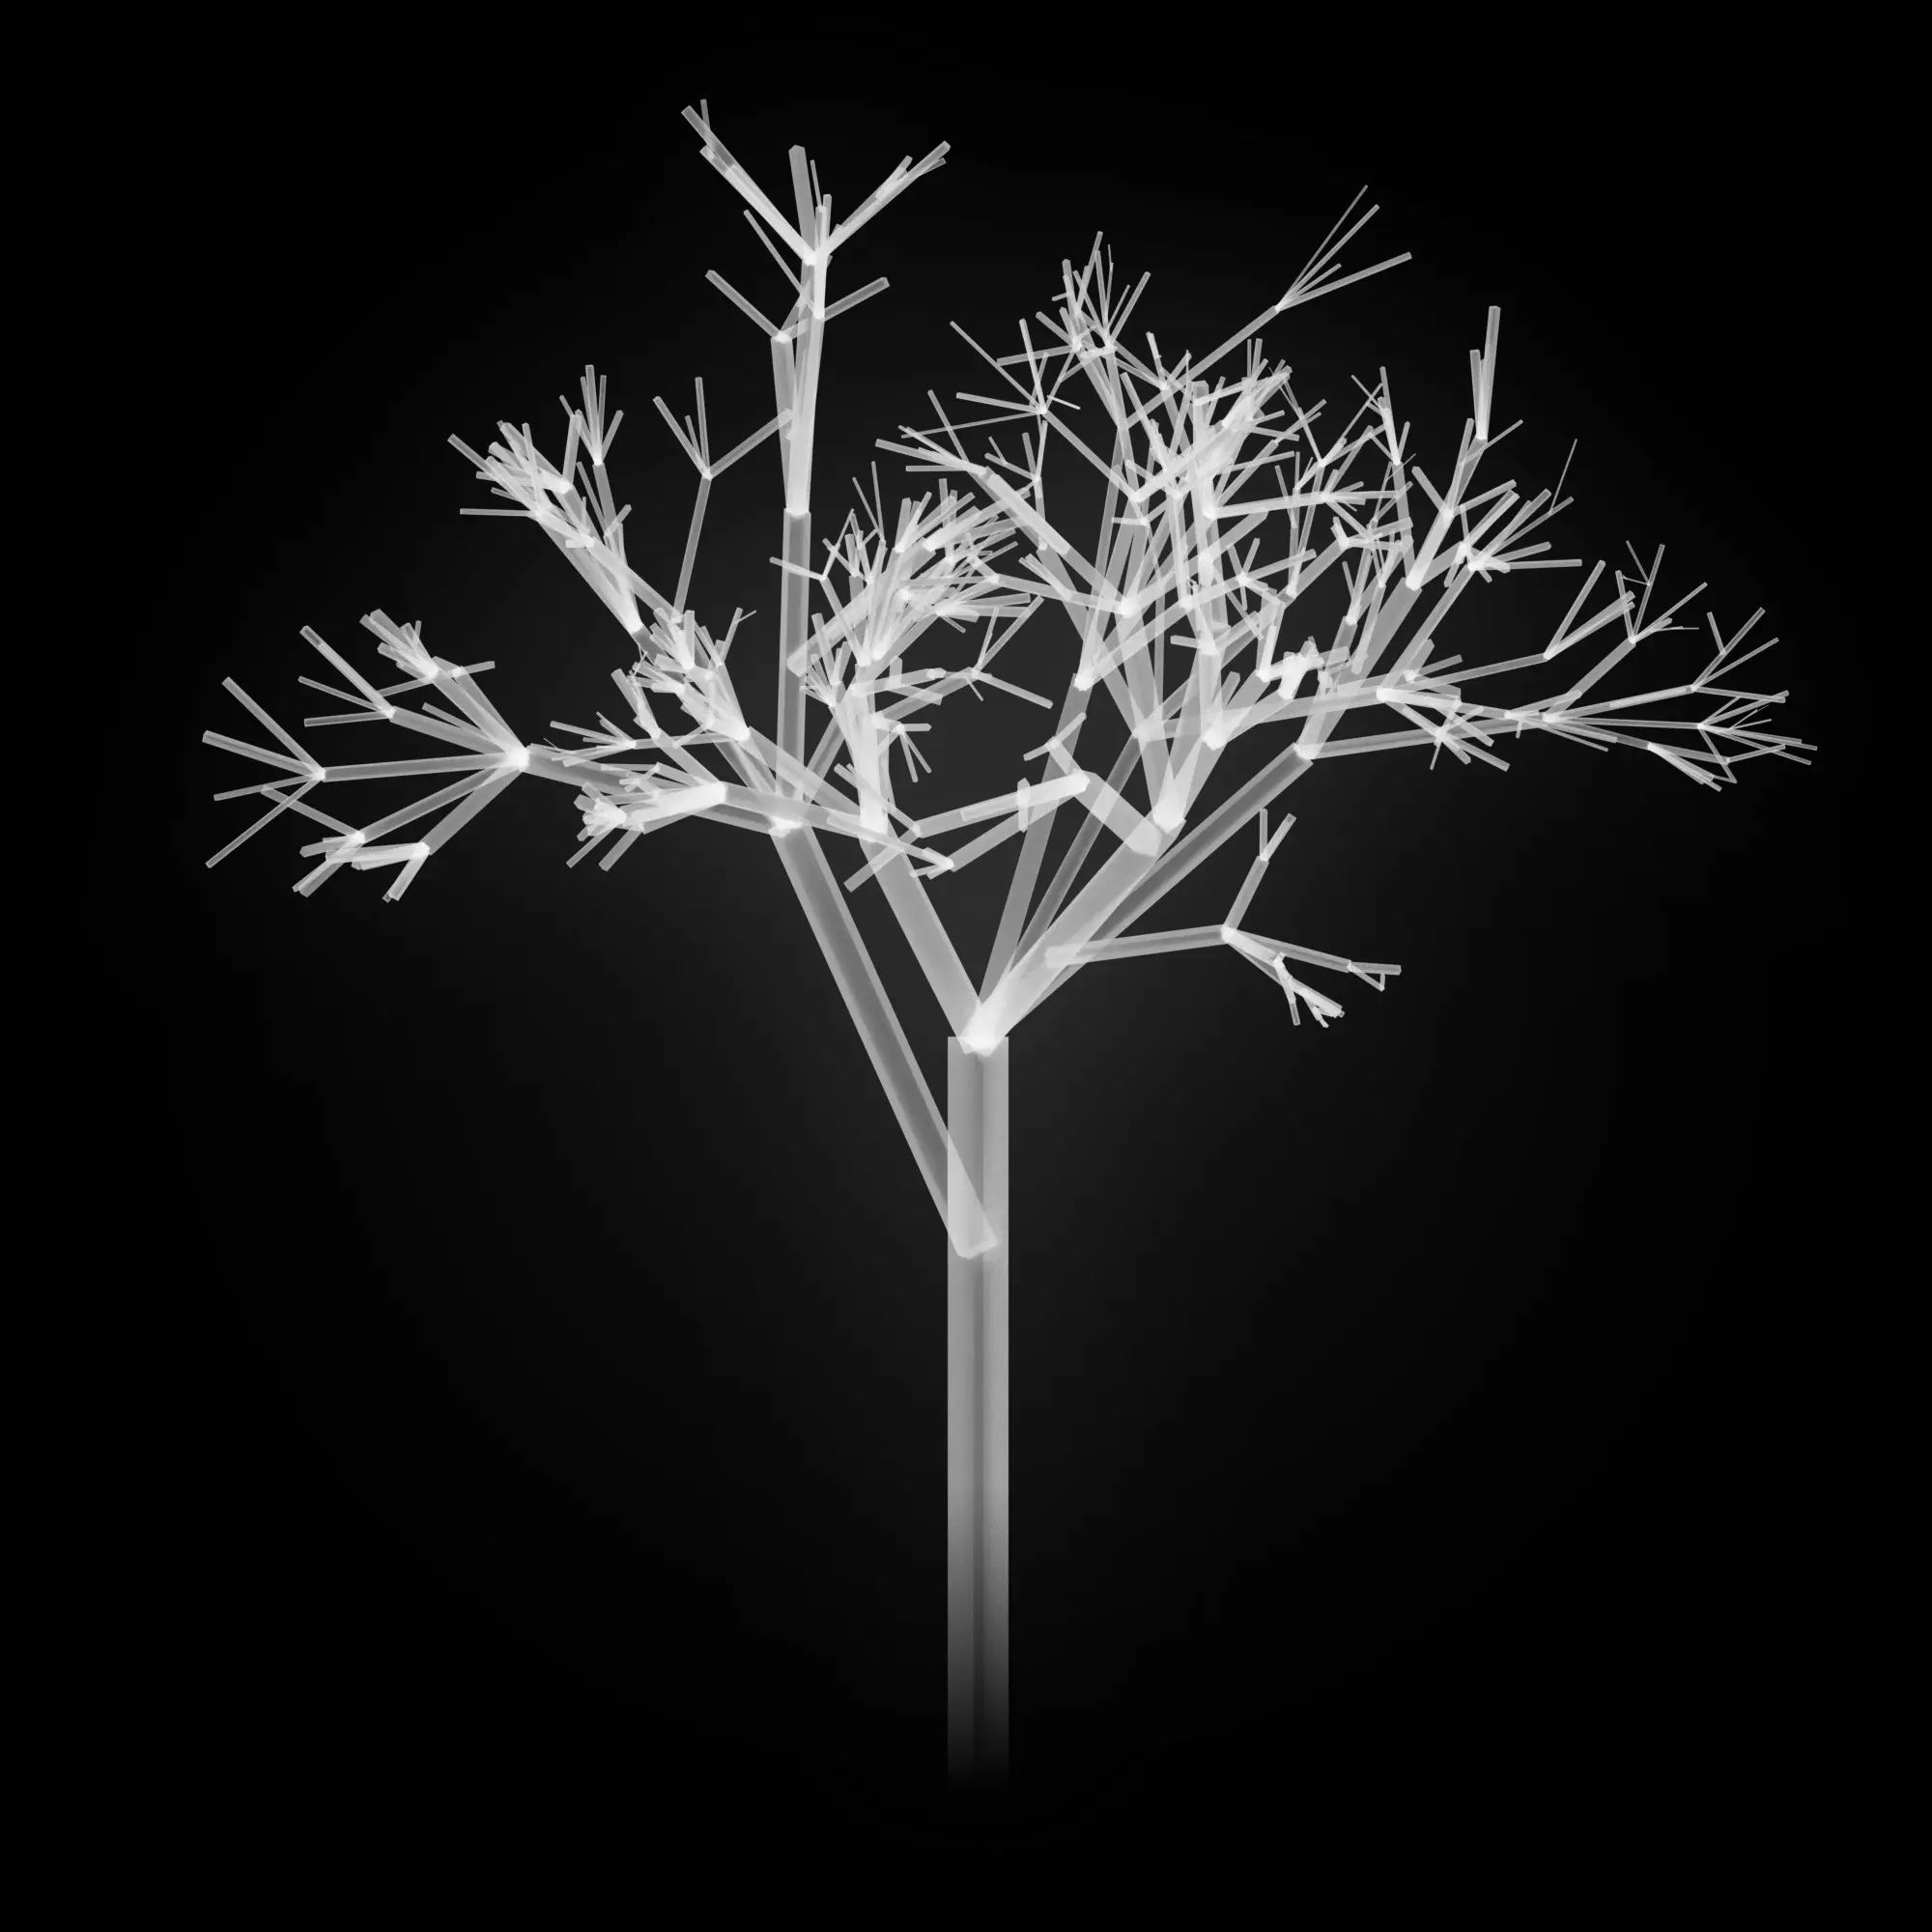 Unnamed Tree Image